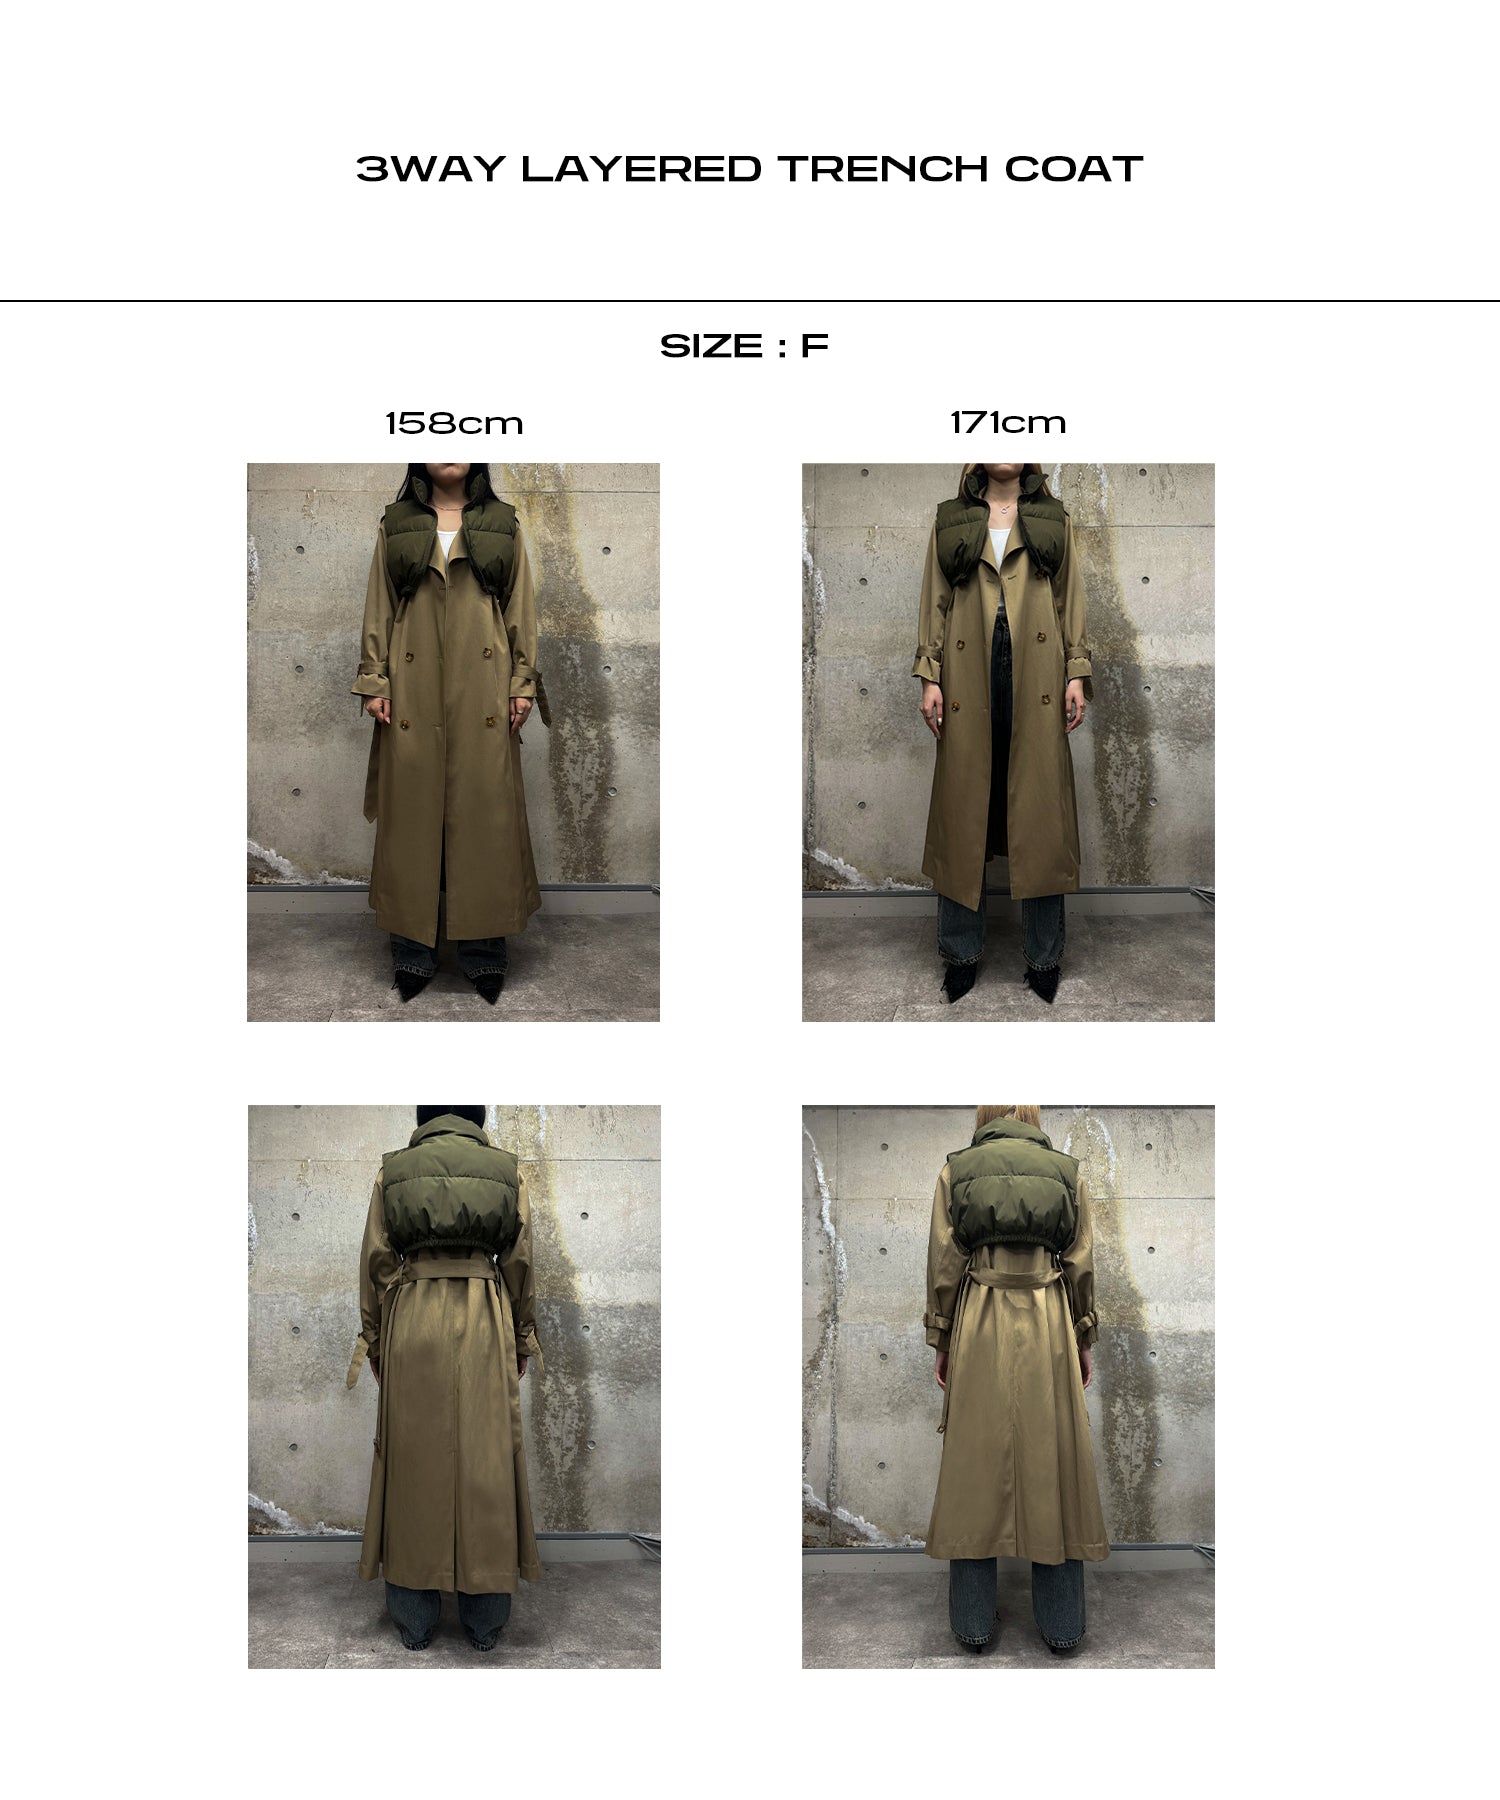 3way layered trench coat